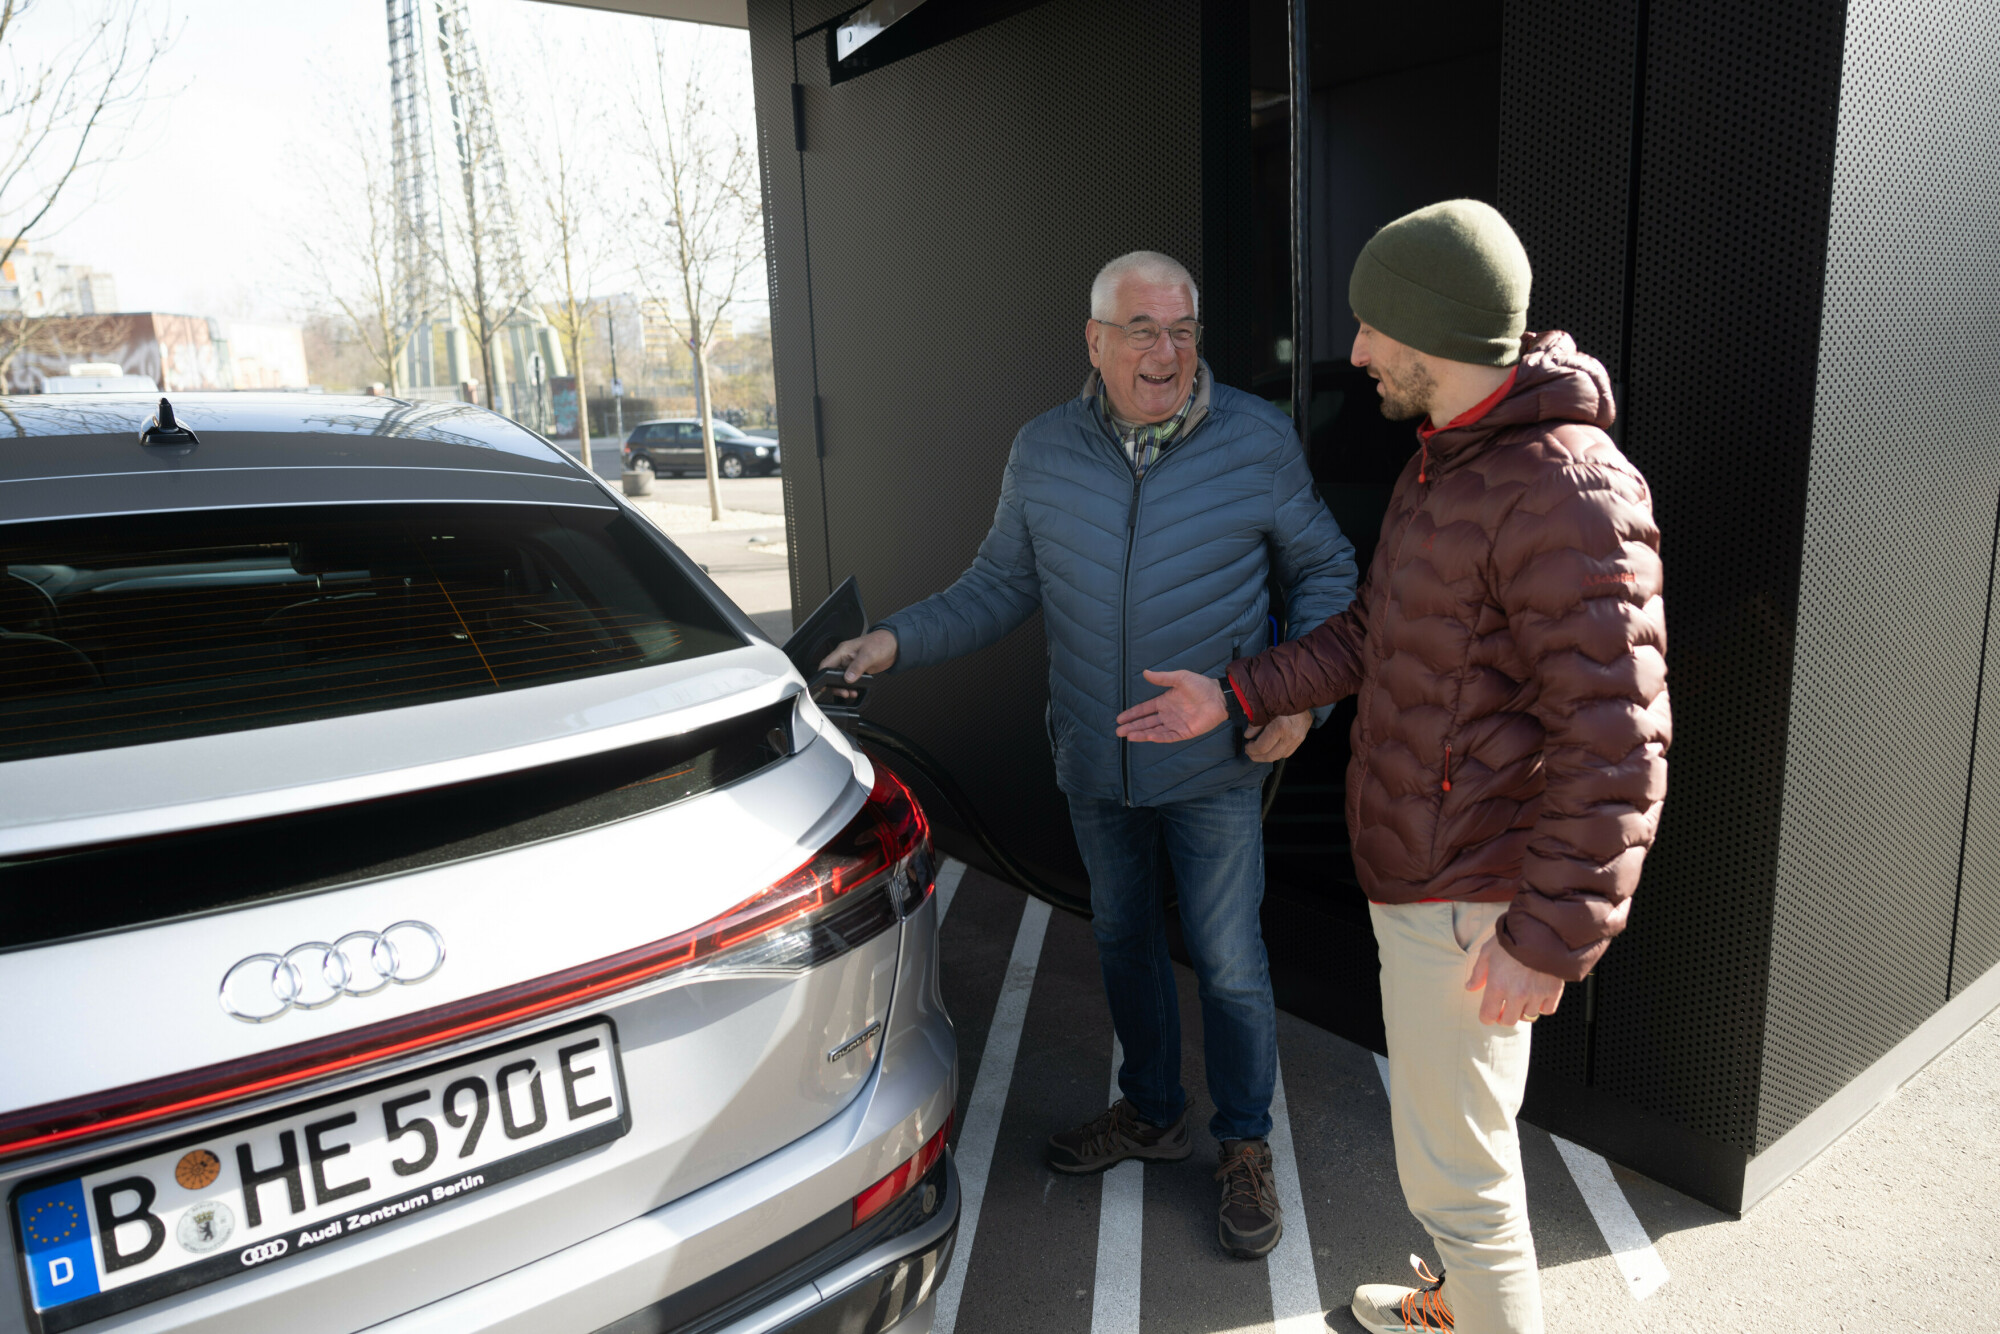 Des opportunités électrisantes remplacent l'ennui de la recharge :  Nouveau centre de recharge Audi dans le centre de Berlin - Audi France Media